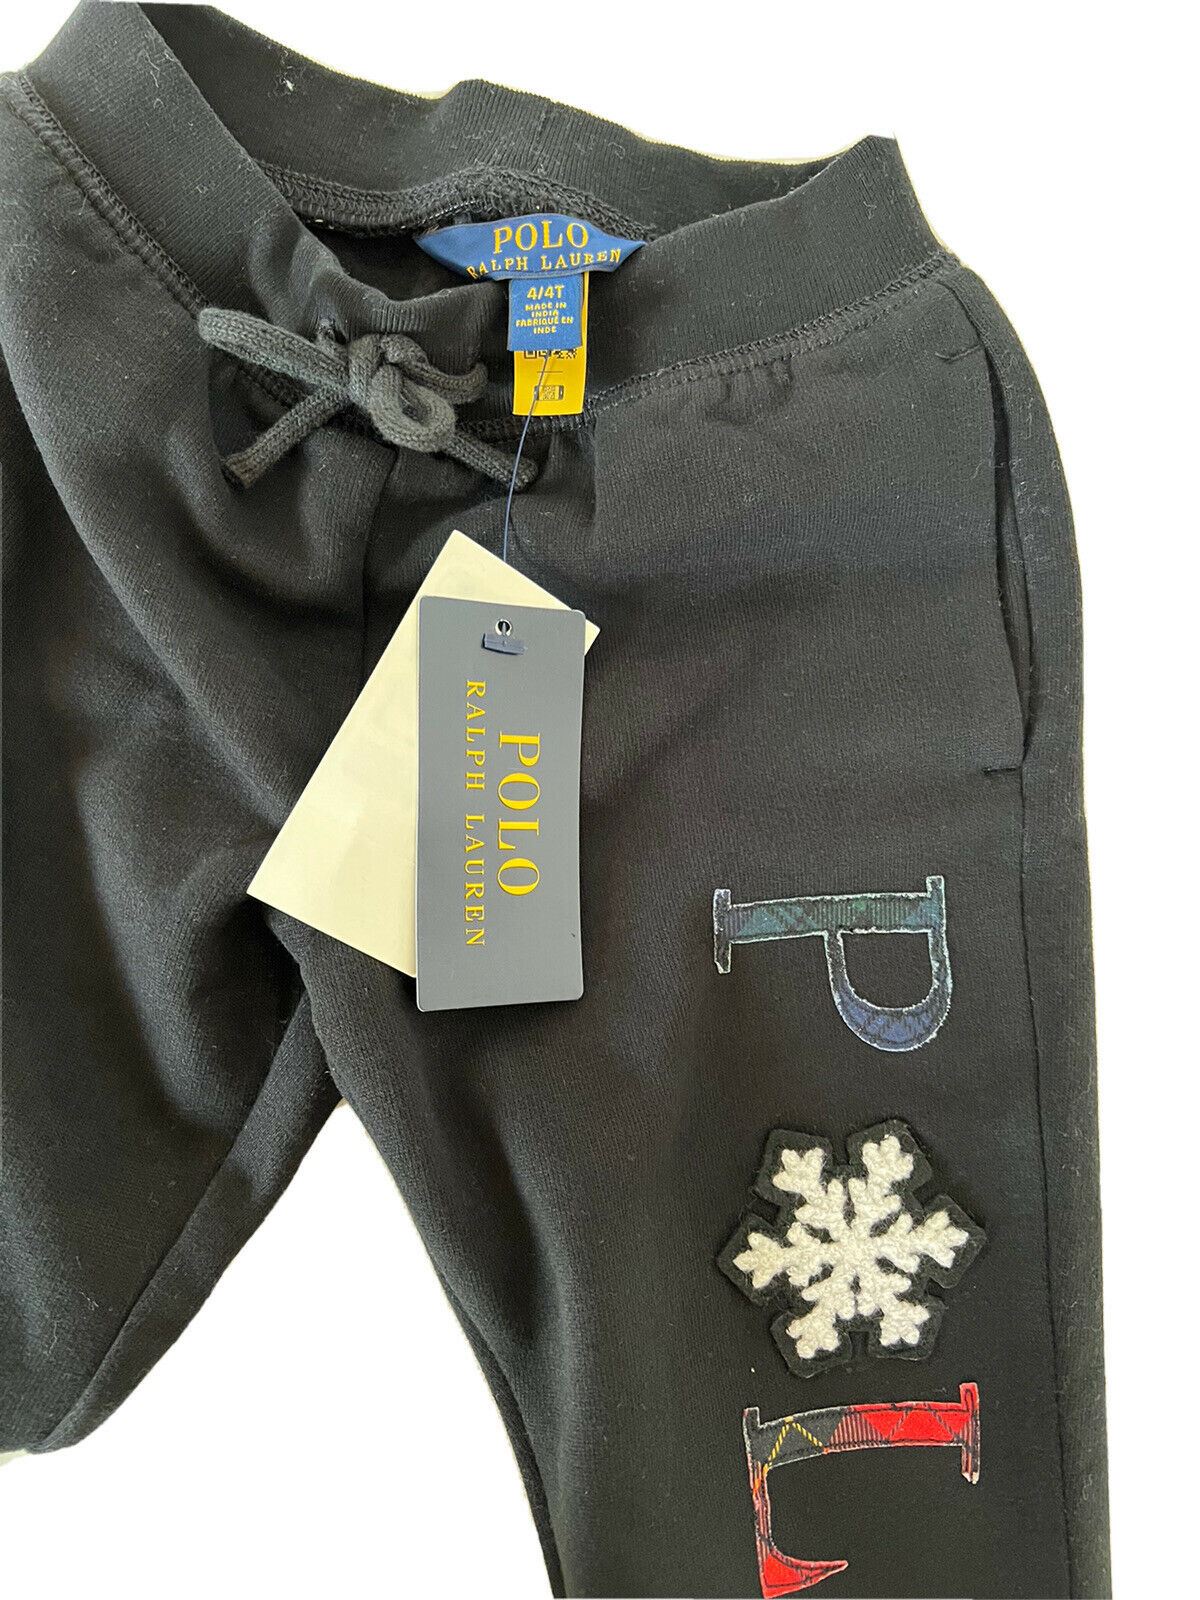 Neu mit Etikett: Schwarze Schneeflocken-Freizeithose 4 von Polo Ralph Lauren für Jungen, hergestellt in Indien